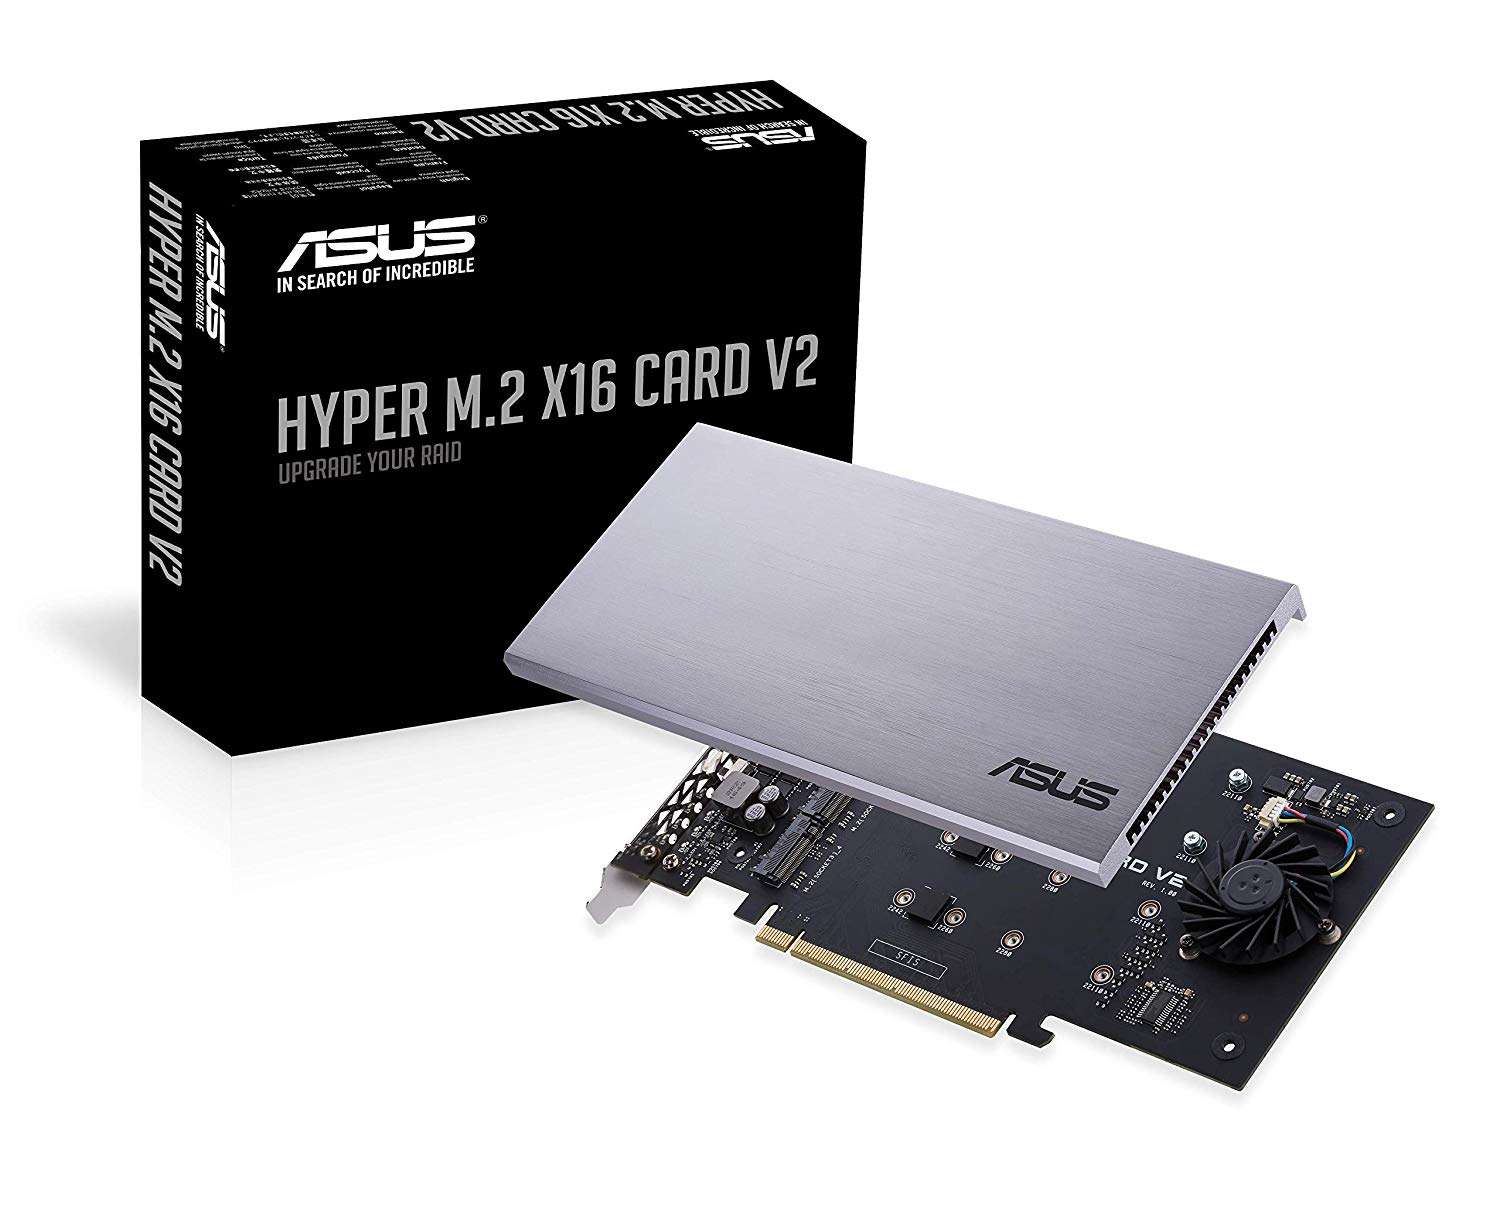 ایسوس از کارت RAID جدید Hyper M.2 x16 Card V2 رونمایی کرد